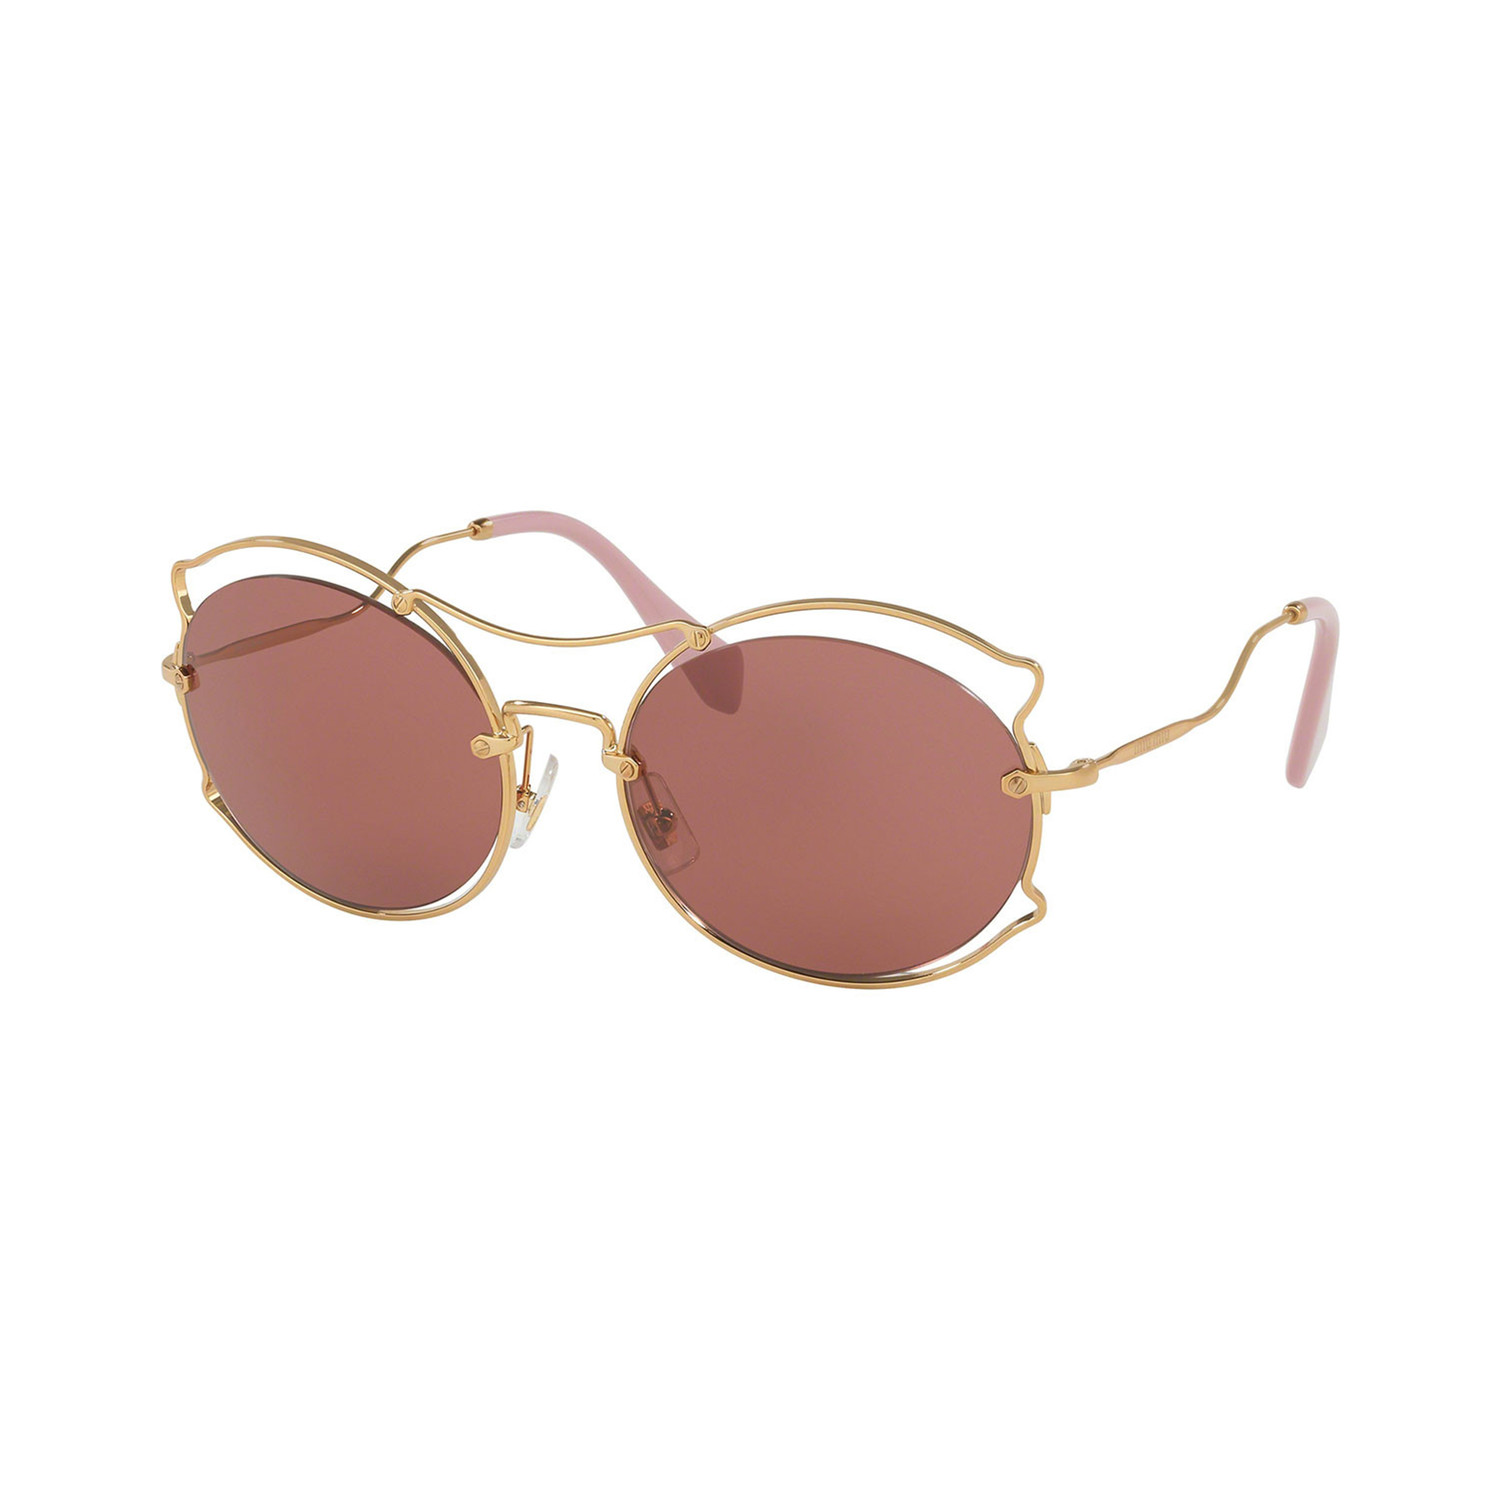 Miu Miu // Women's Sunglasses // Antique Gold + Dark Violet - Designer